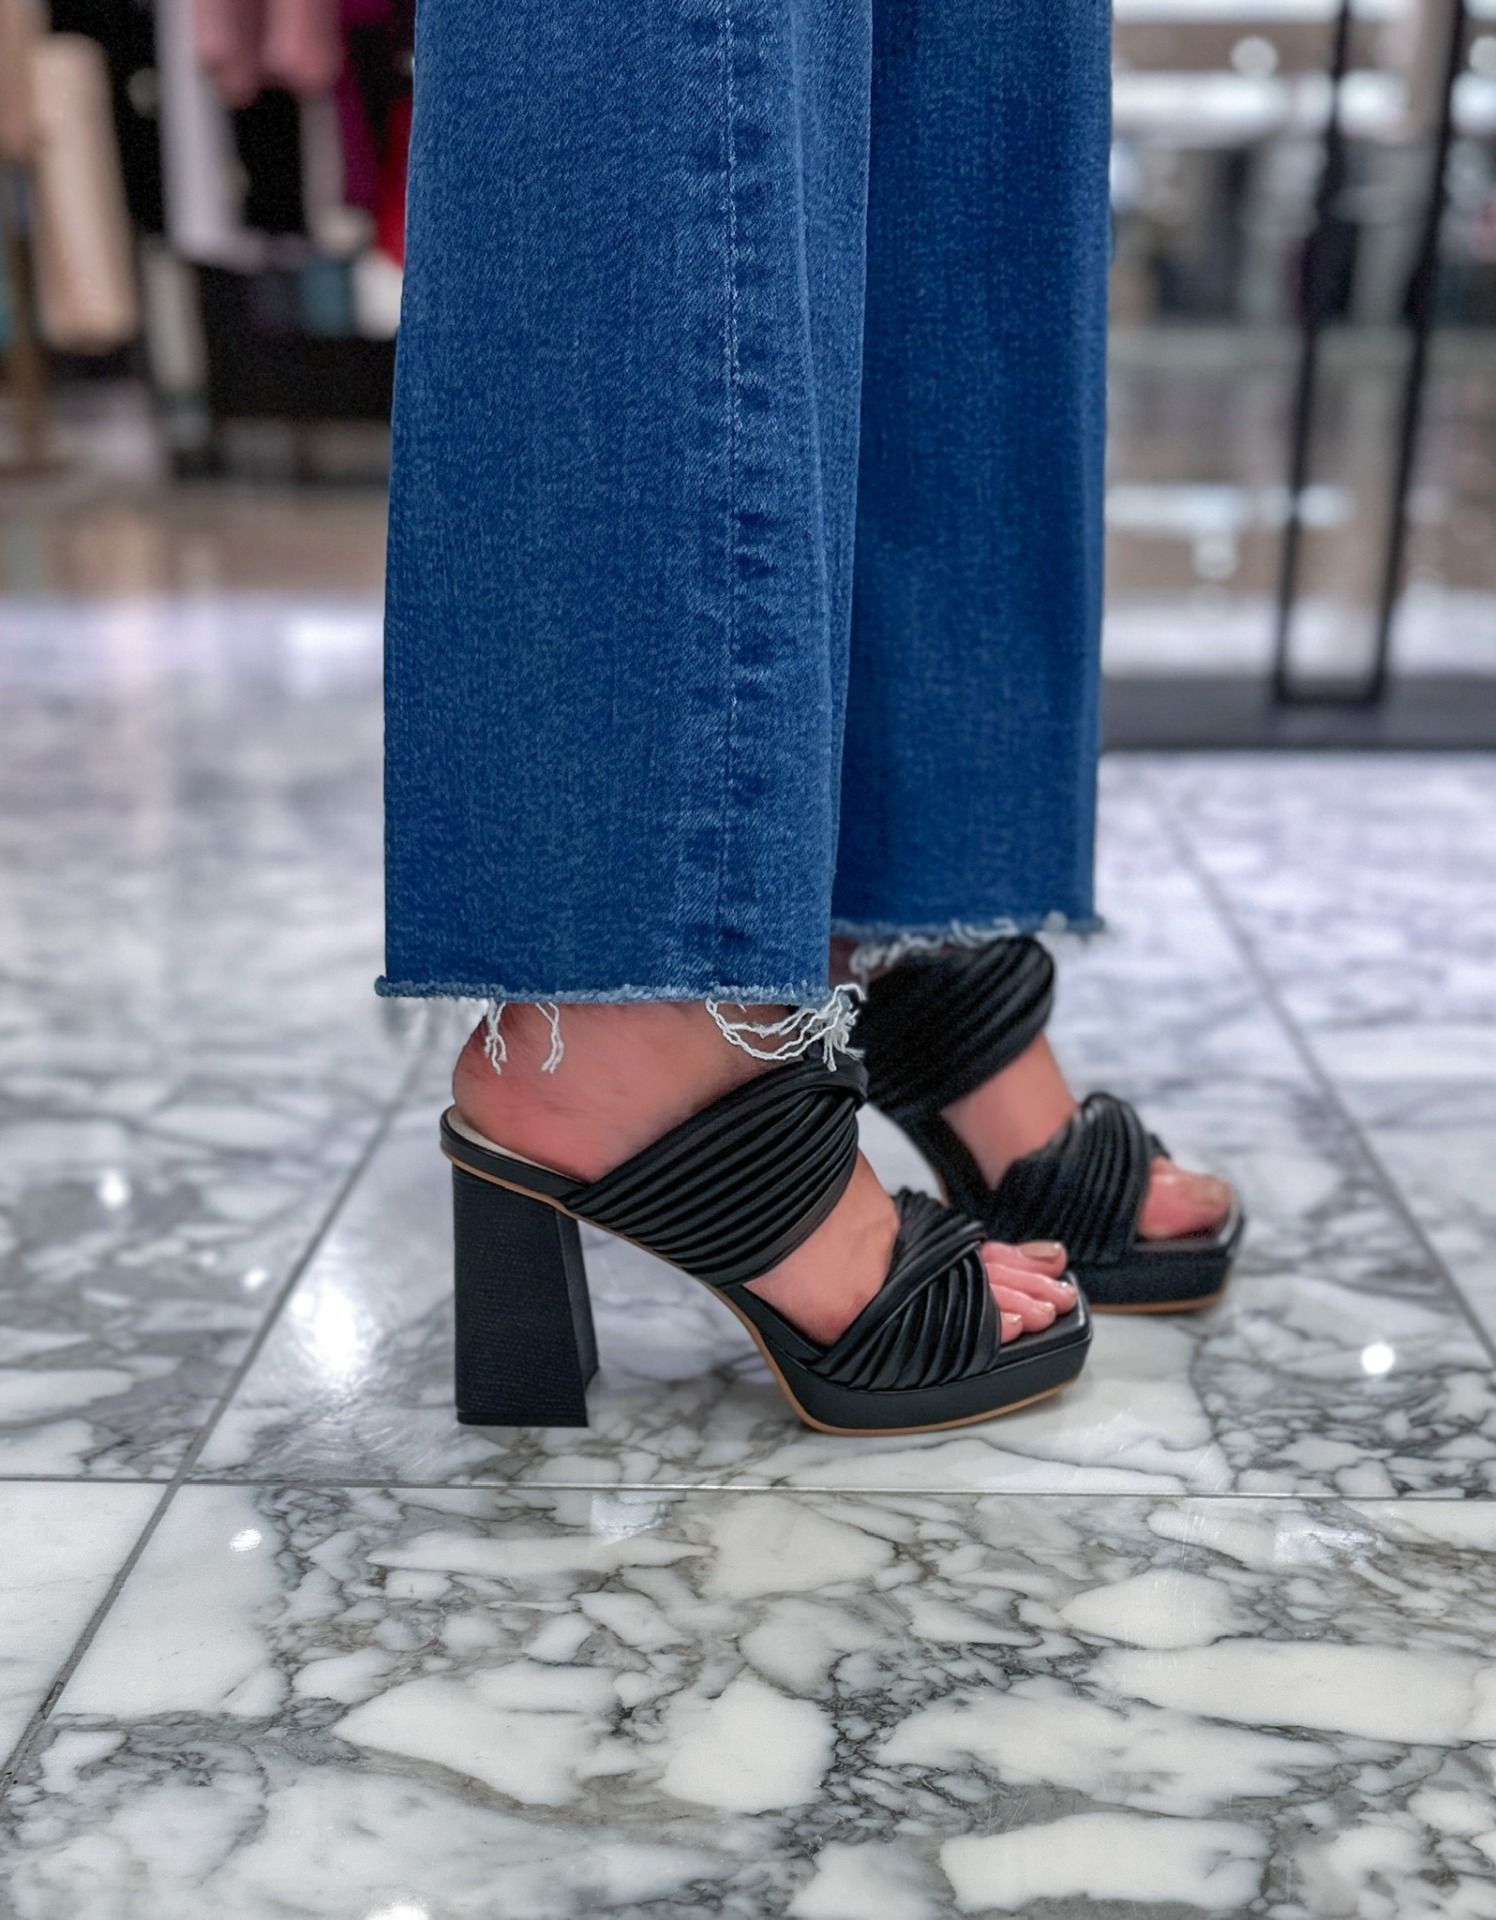 dolce vita platform heels | Nordstrom Sale Outfits